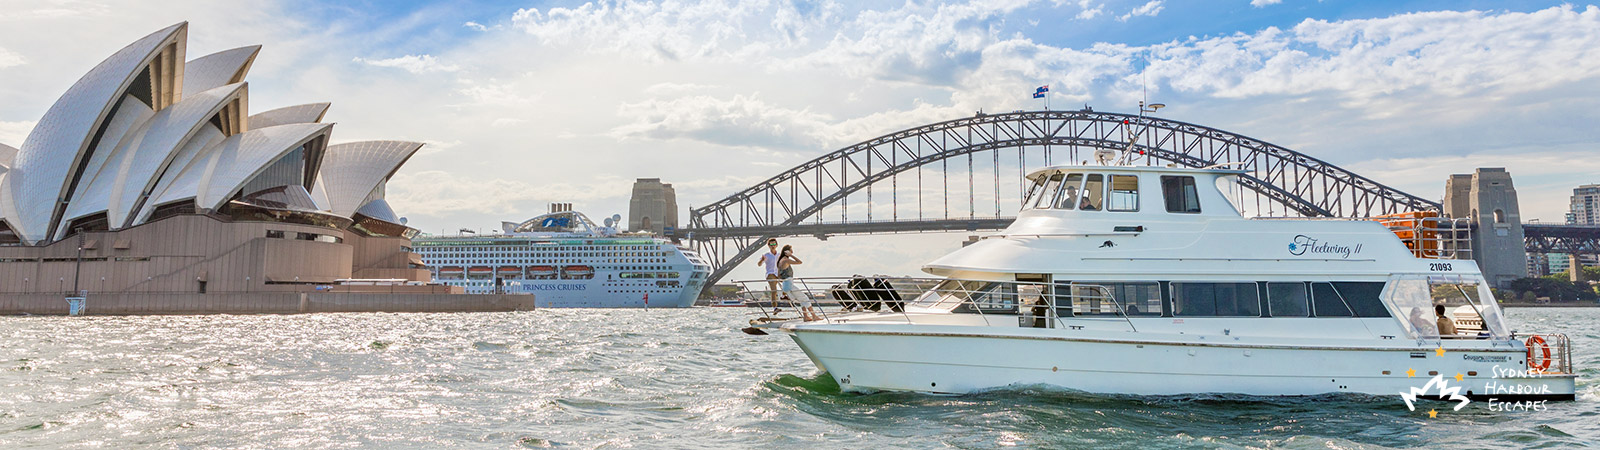 Fleetwing II boat on Sydney Harbour